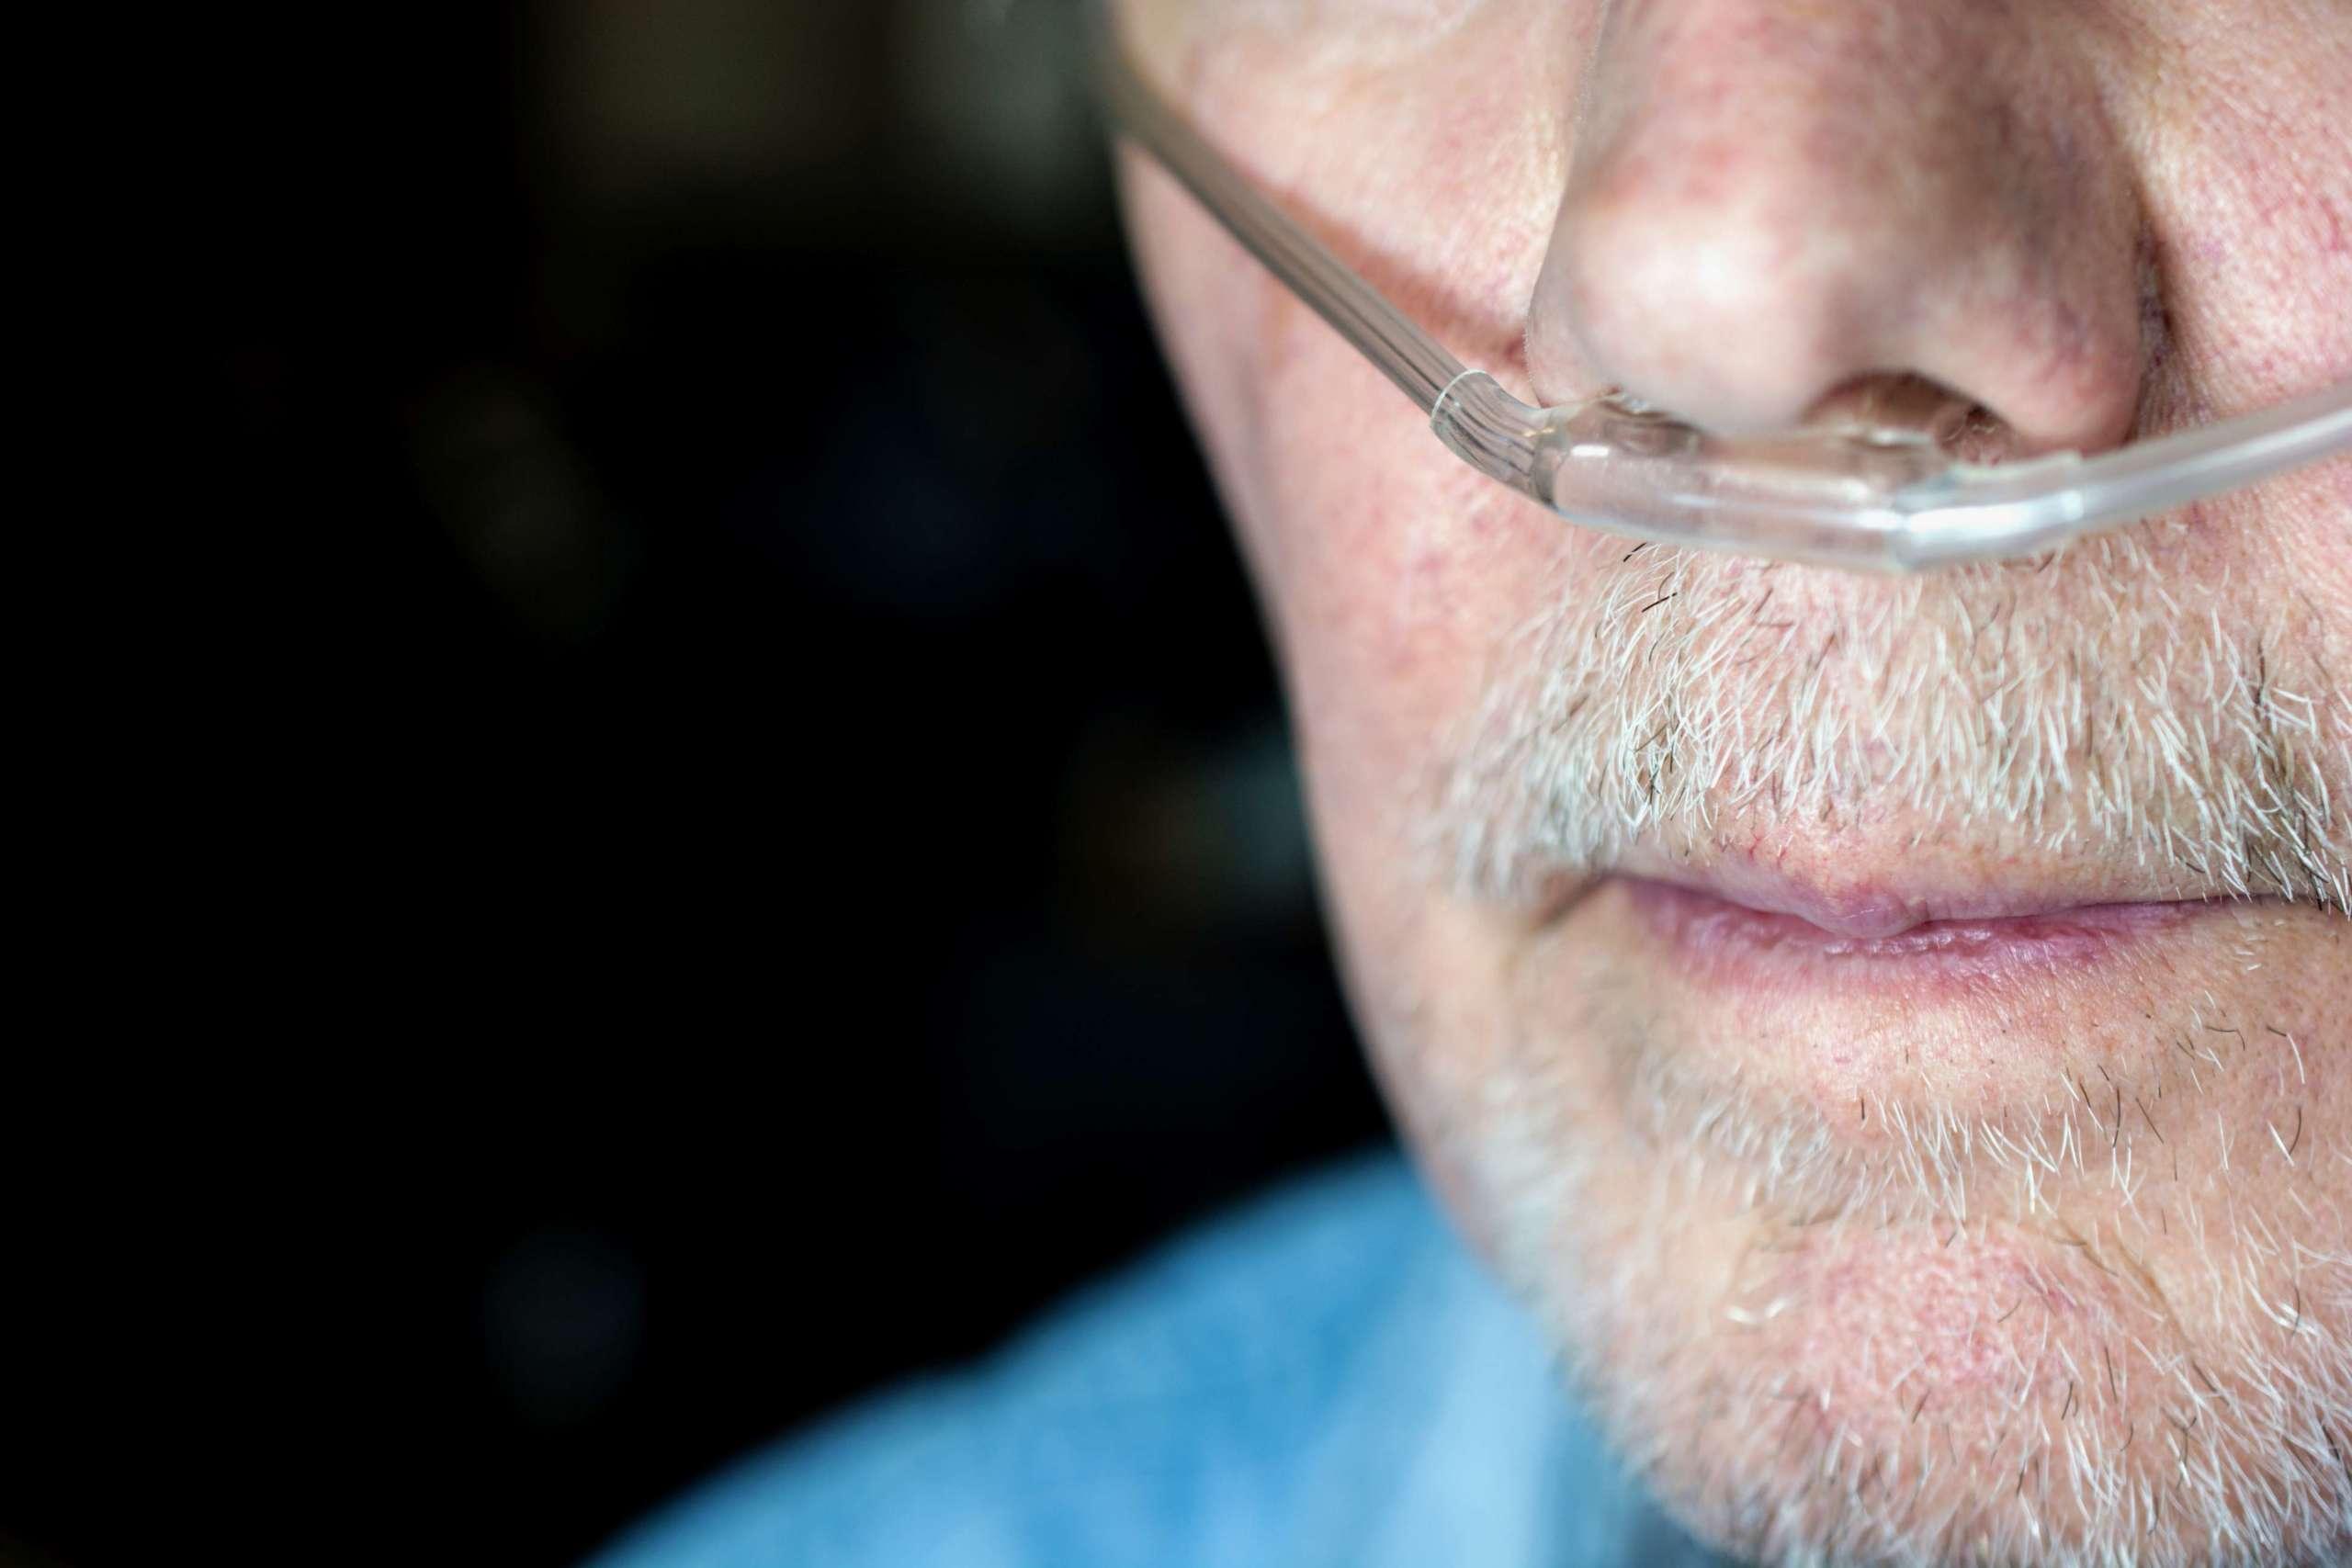 Gesicht eines älteren Mannes mit Sauerstoffkanüle, die Sauerstoff durch die Nasenlöcher einbringt.